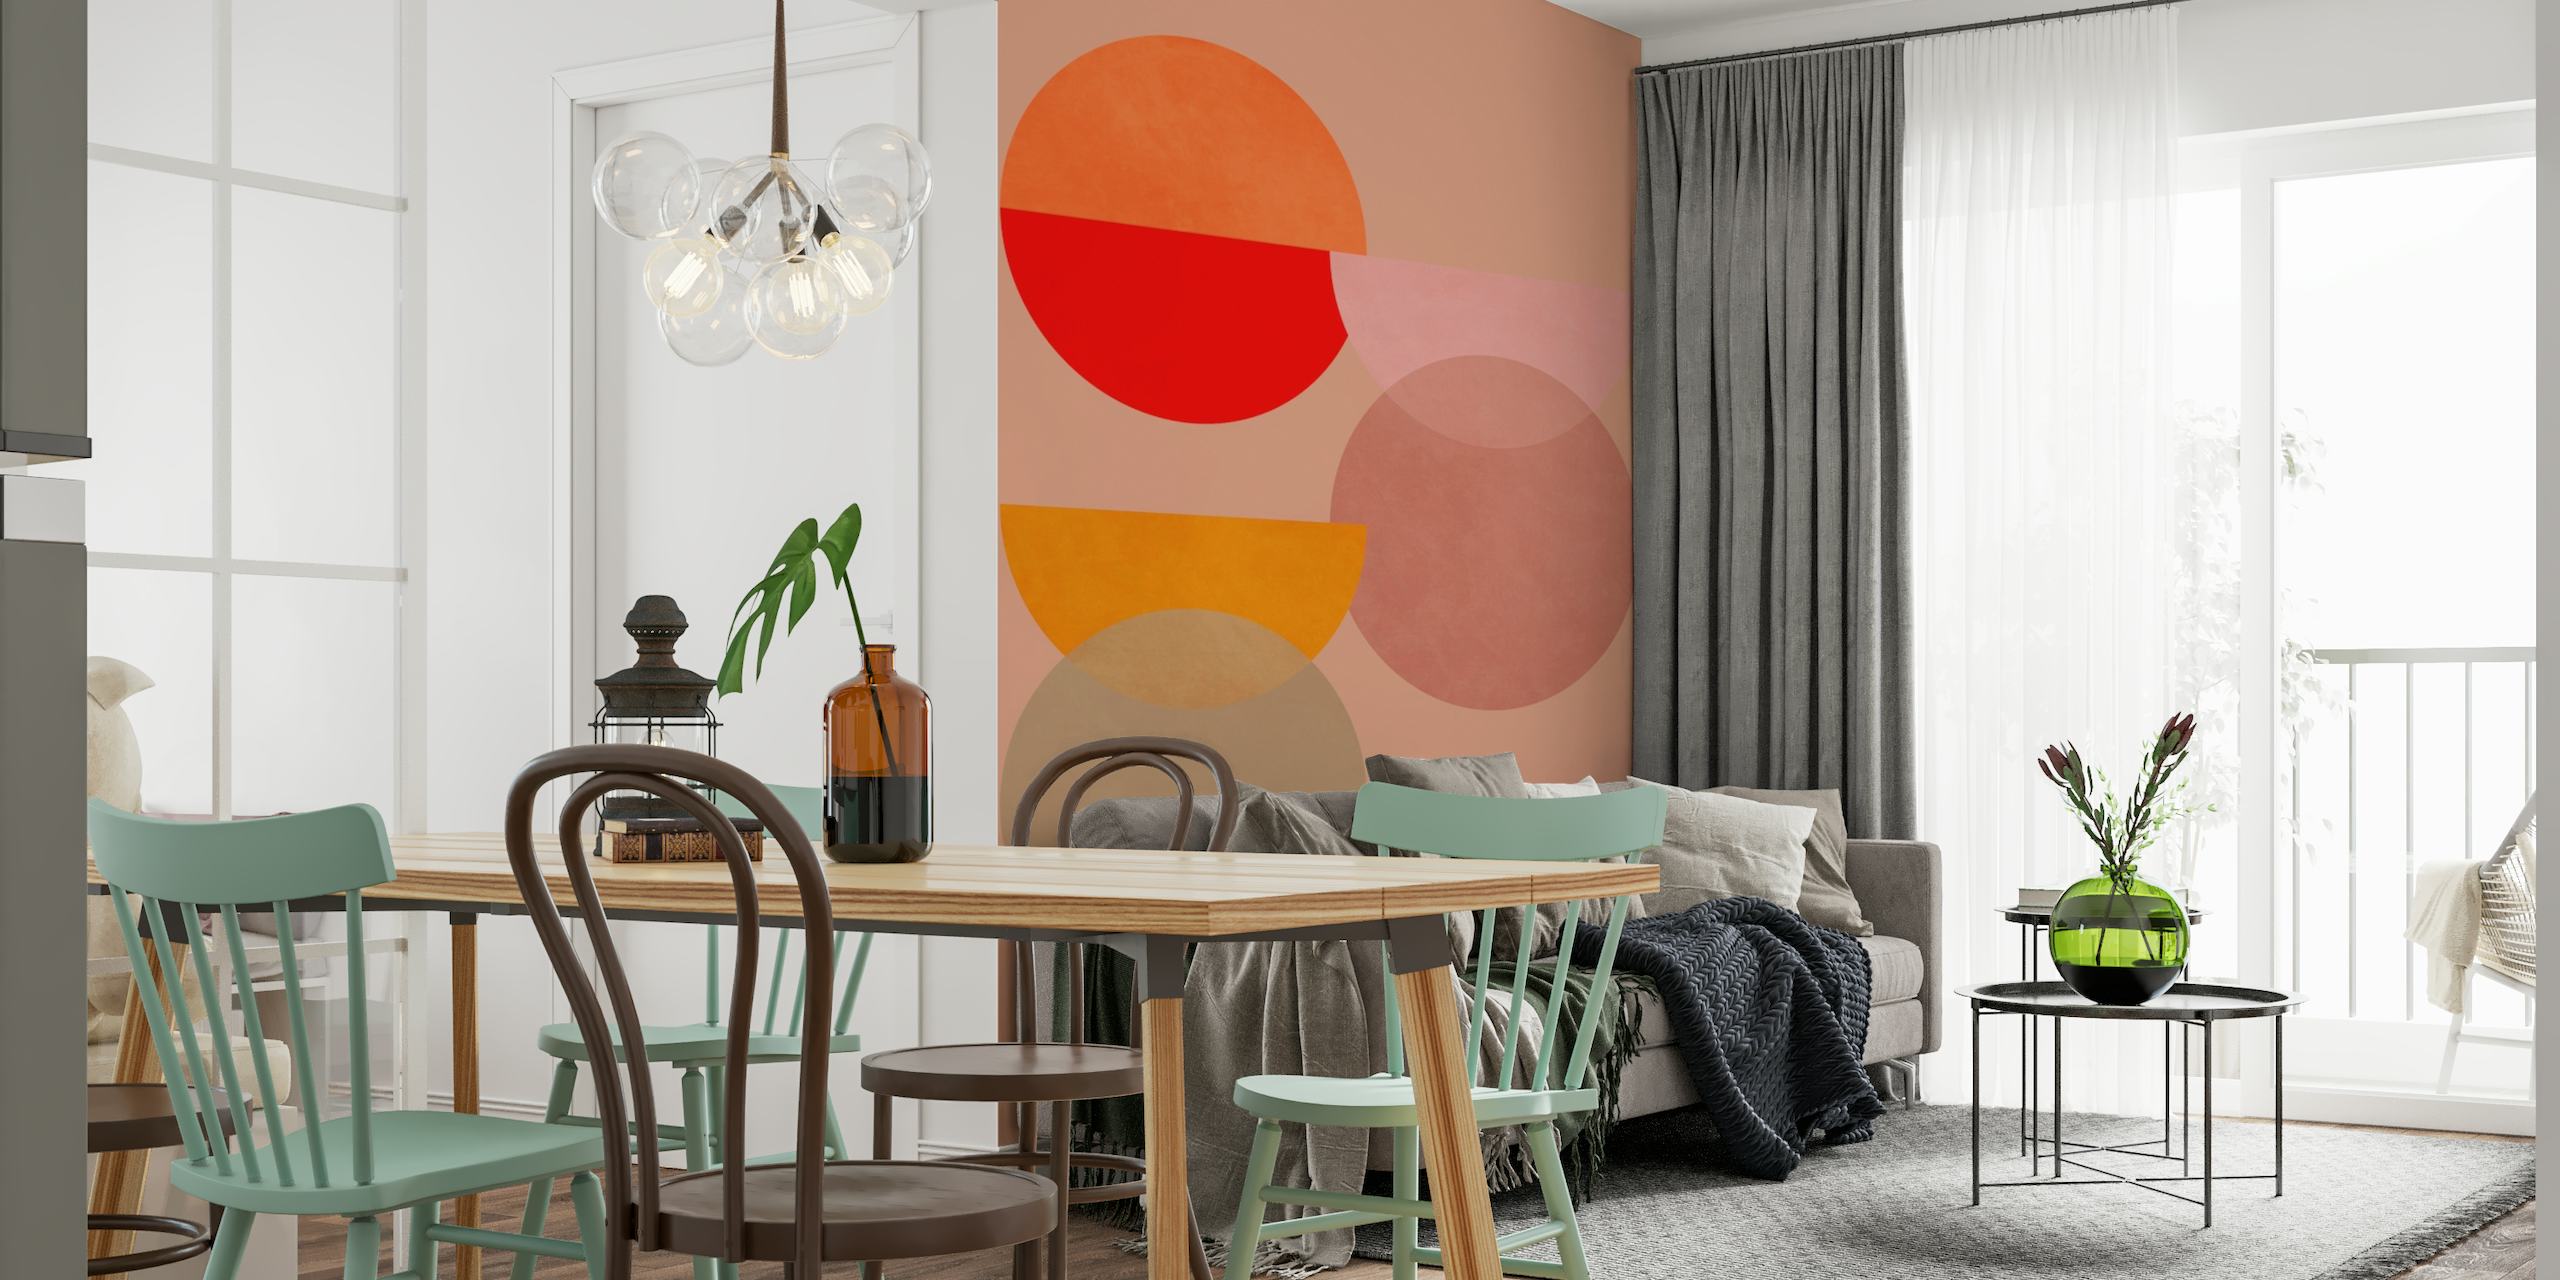 Abstraktní geometrická nástěnná malba s překrývajícími se kruhy v odstínech terakotové, broskvové a tmavě růžové na měkkém pozadí.